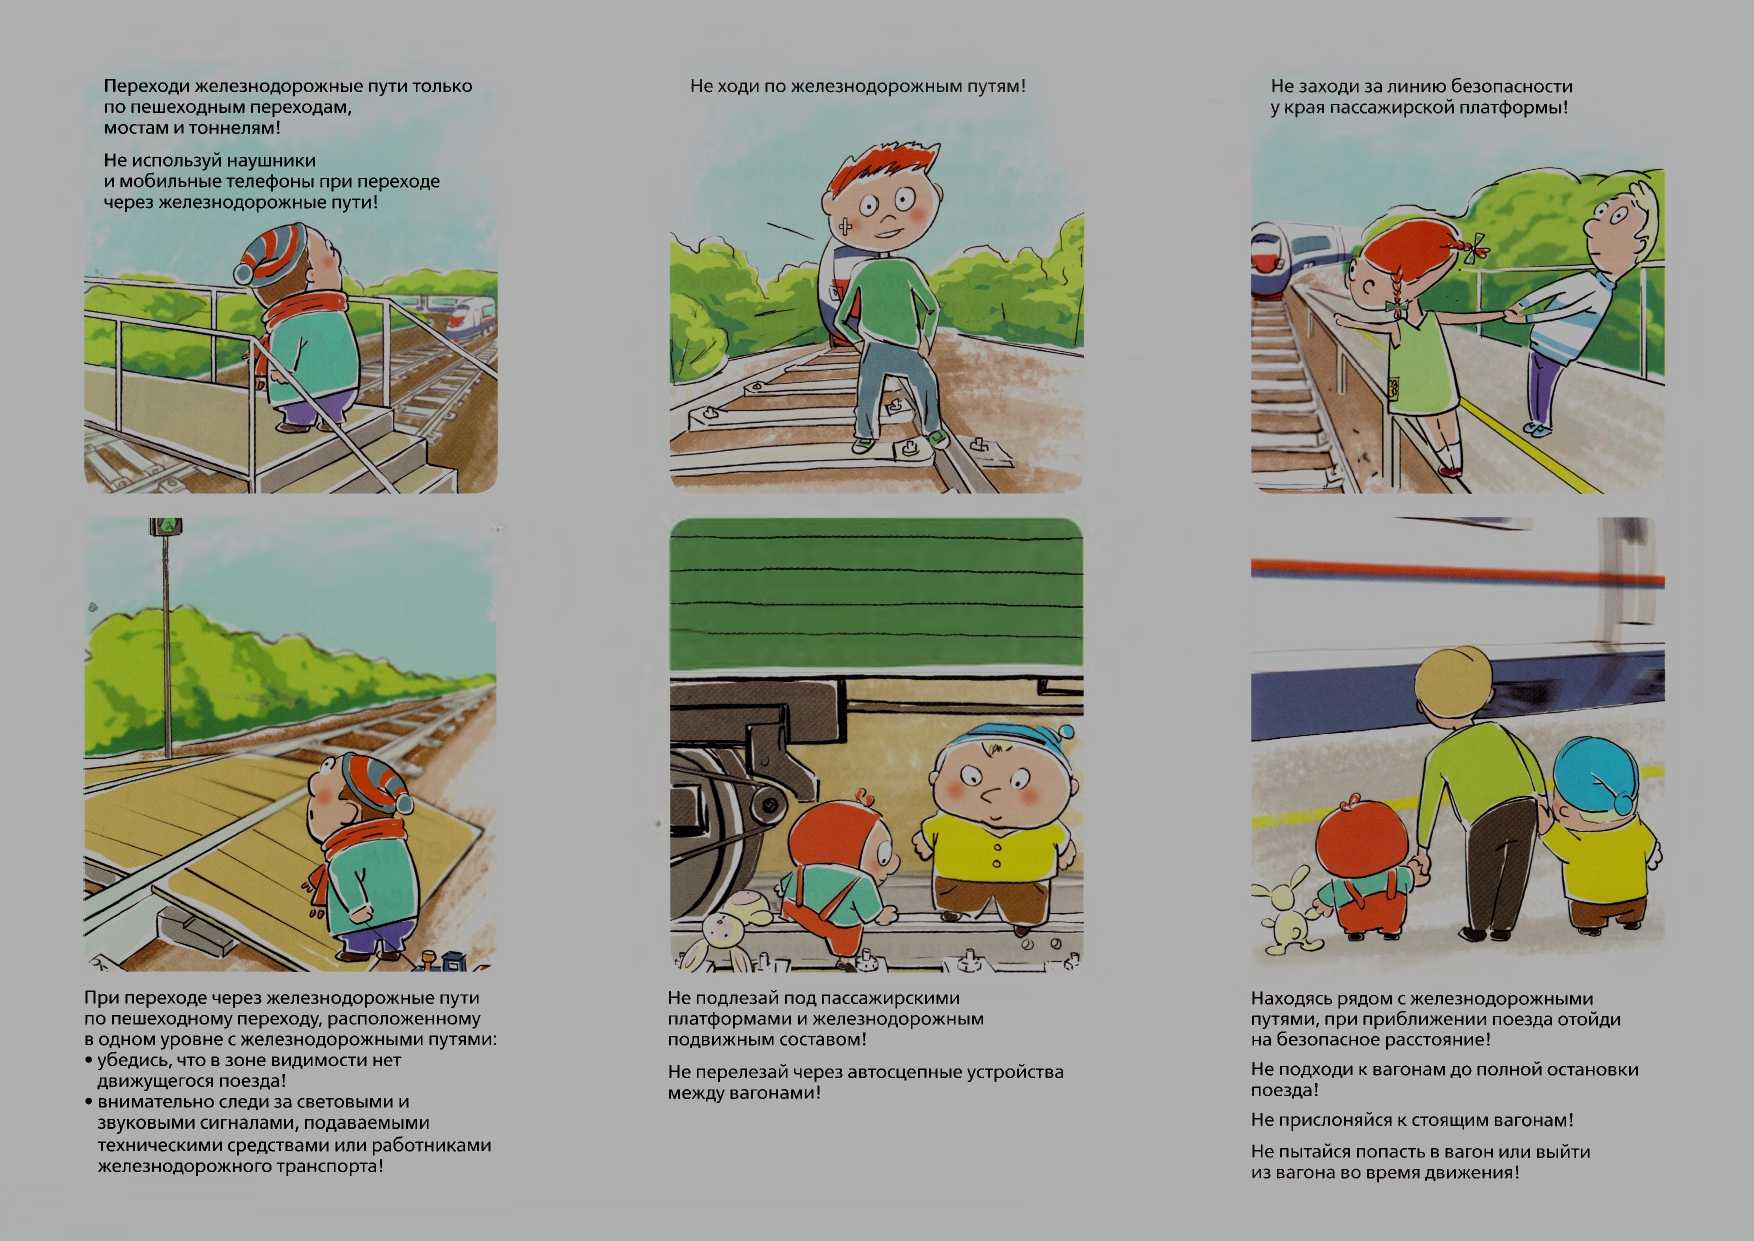 Как нарисовать плакат на тему «правила дорожного движения»: безопасность на дороге глазами детей, рисунки, картинки, раскраски по пдд для школьников и малышей - женская жизньженская жизнь